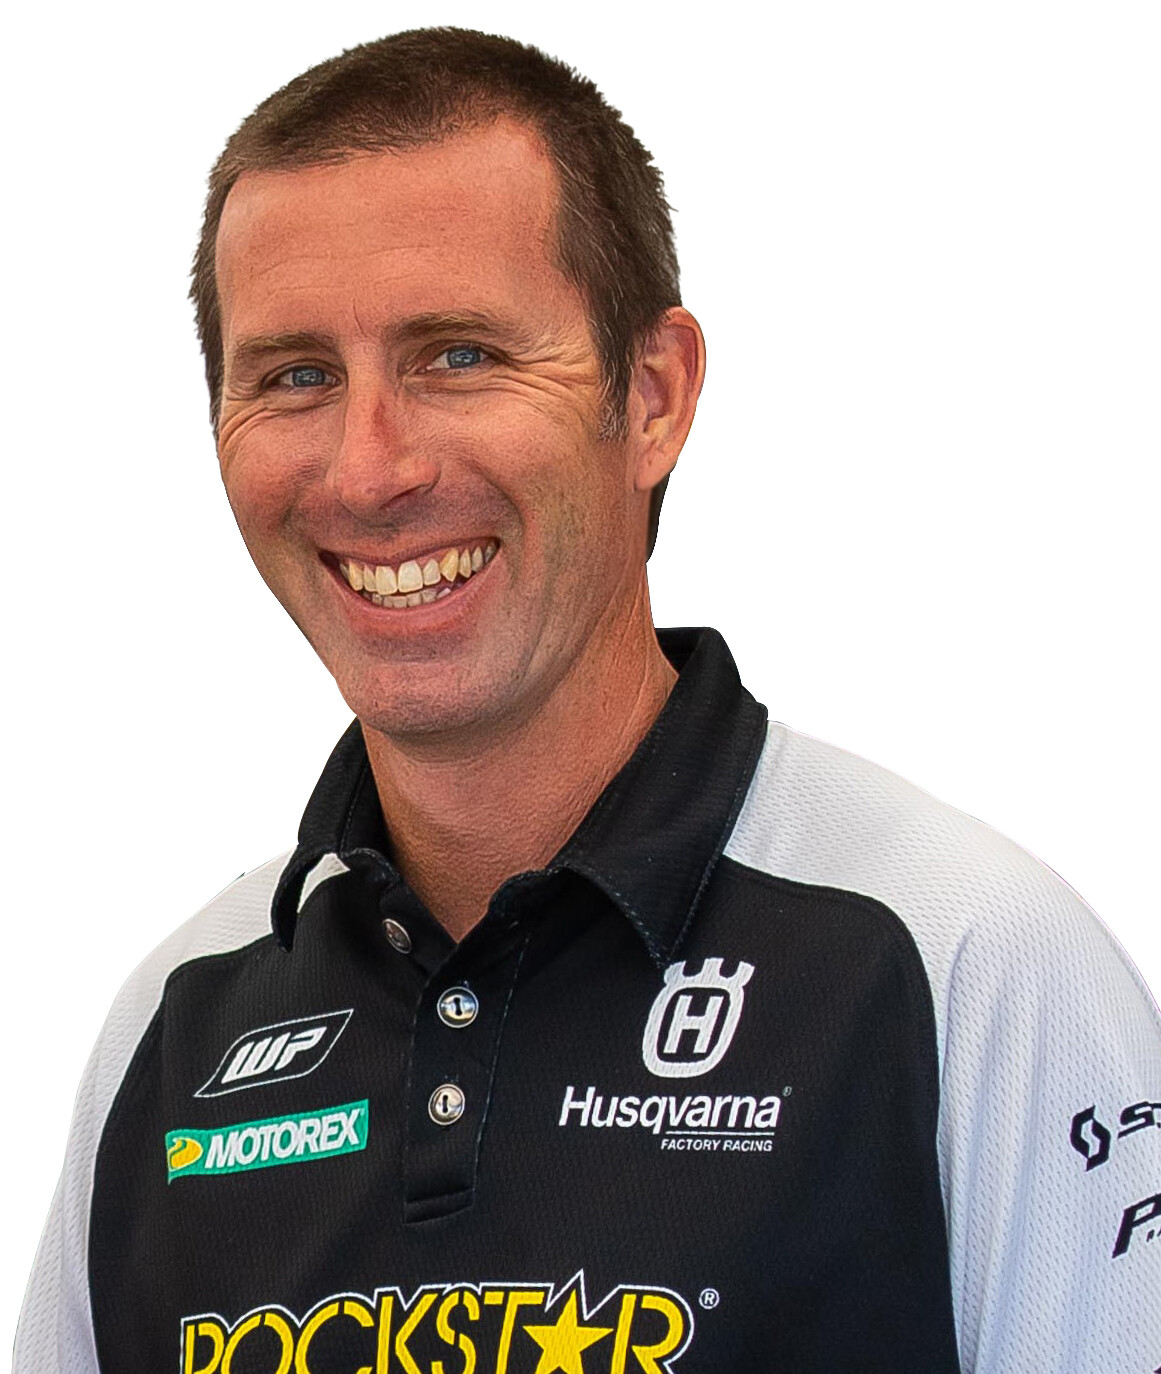 Husqvarna's Steve Westfall talks team management - January 2021 - Racer ...